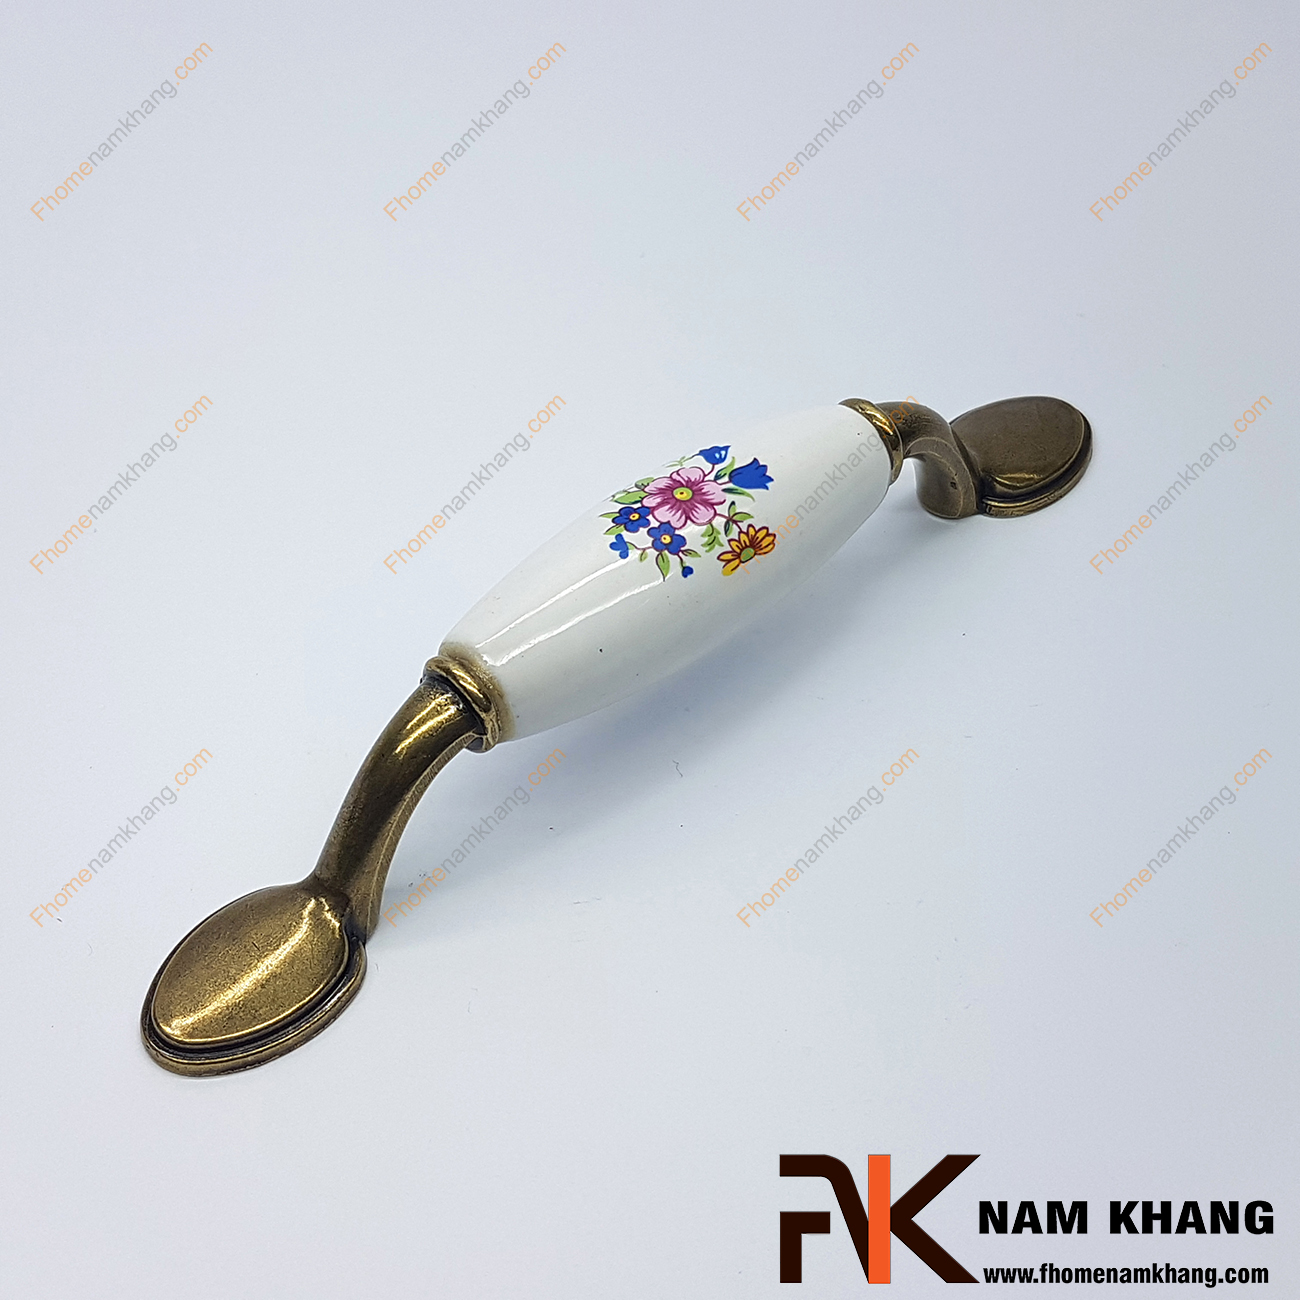 Tay nắm tủ cổ điển NK008-HST là một sản phẩm tay nắm tủ rất cổ điển, lấy cảm hứng từ những họa tiết hoa lá cổ thời trước. Trên thân tay nắm là một vòng sứ trắng tròn tạo cảm giác cầm rất  thoải mái cho người sử dụng.